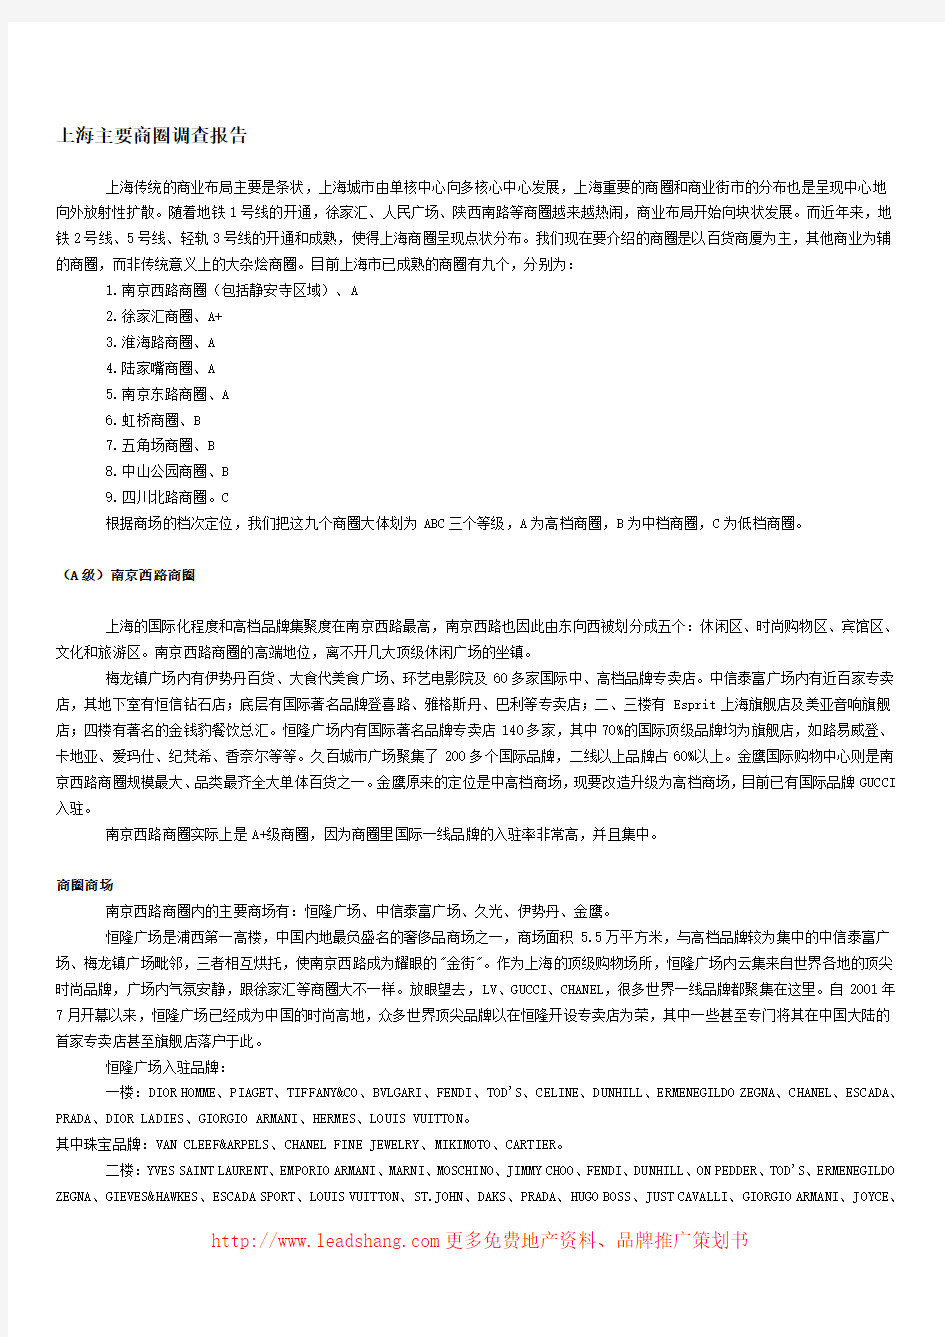 上海商圈调研分析报告